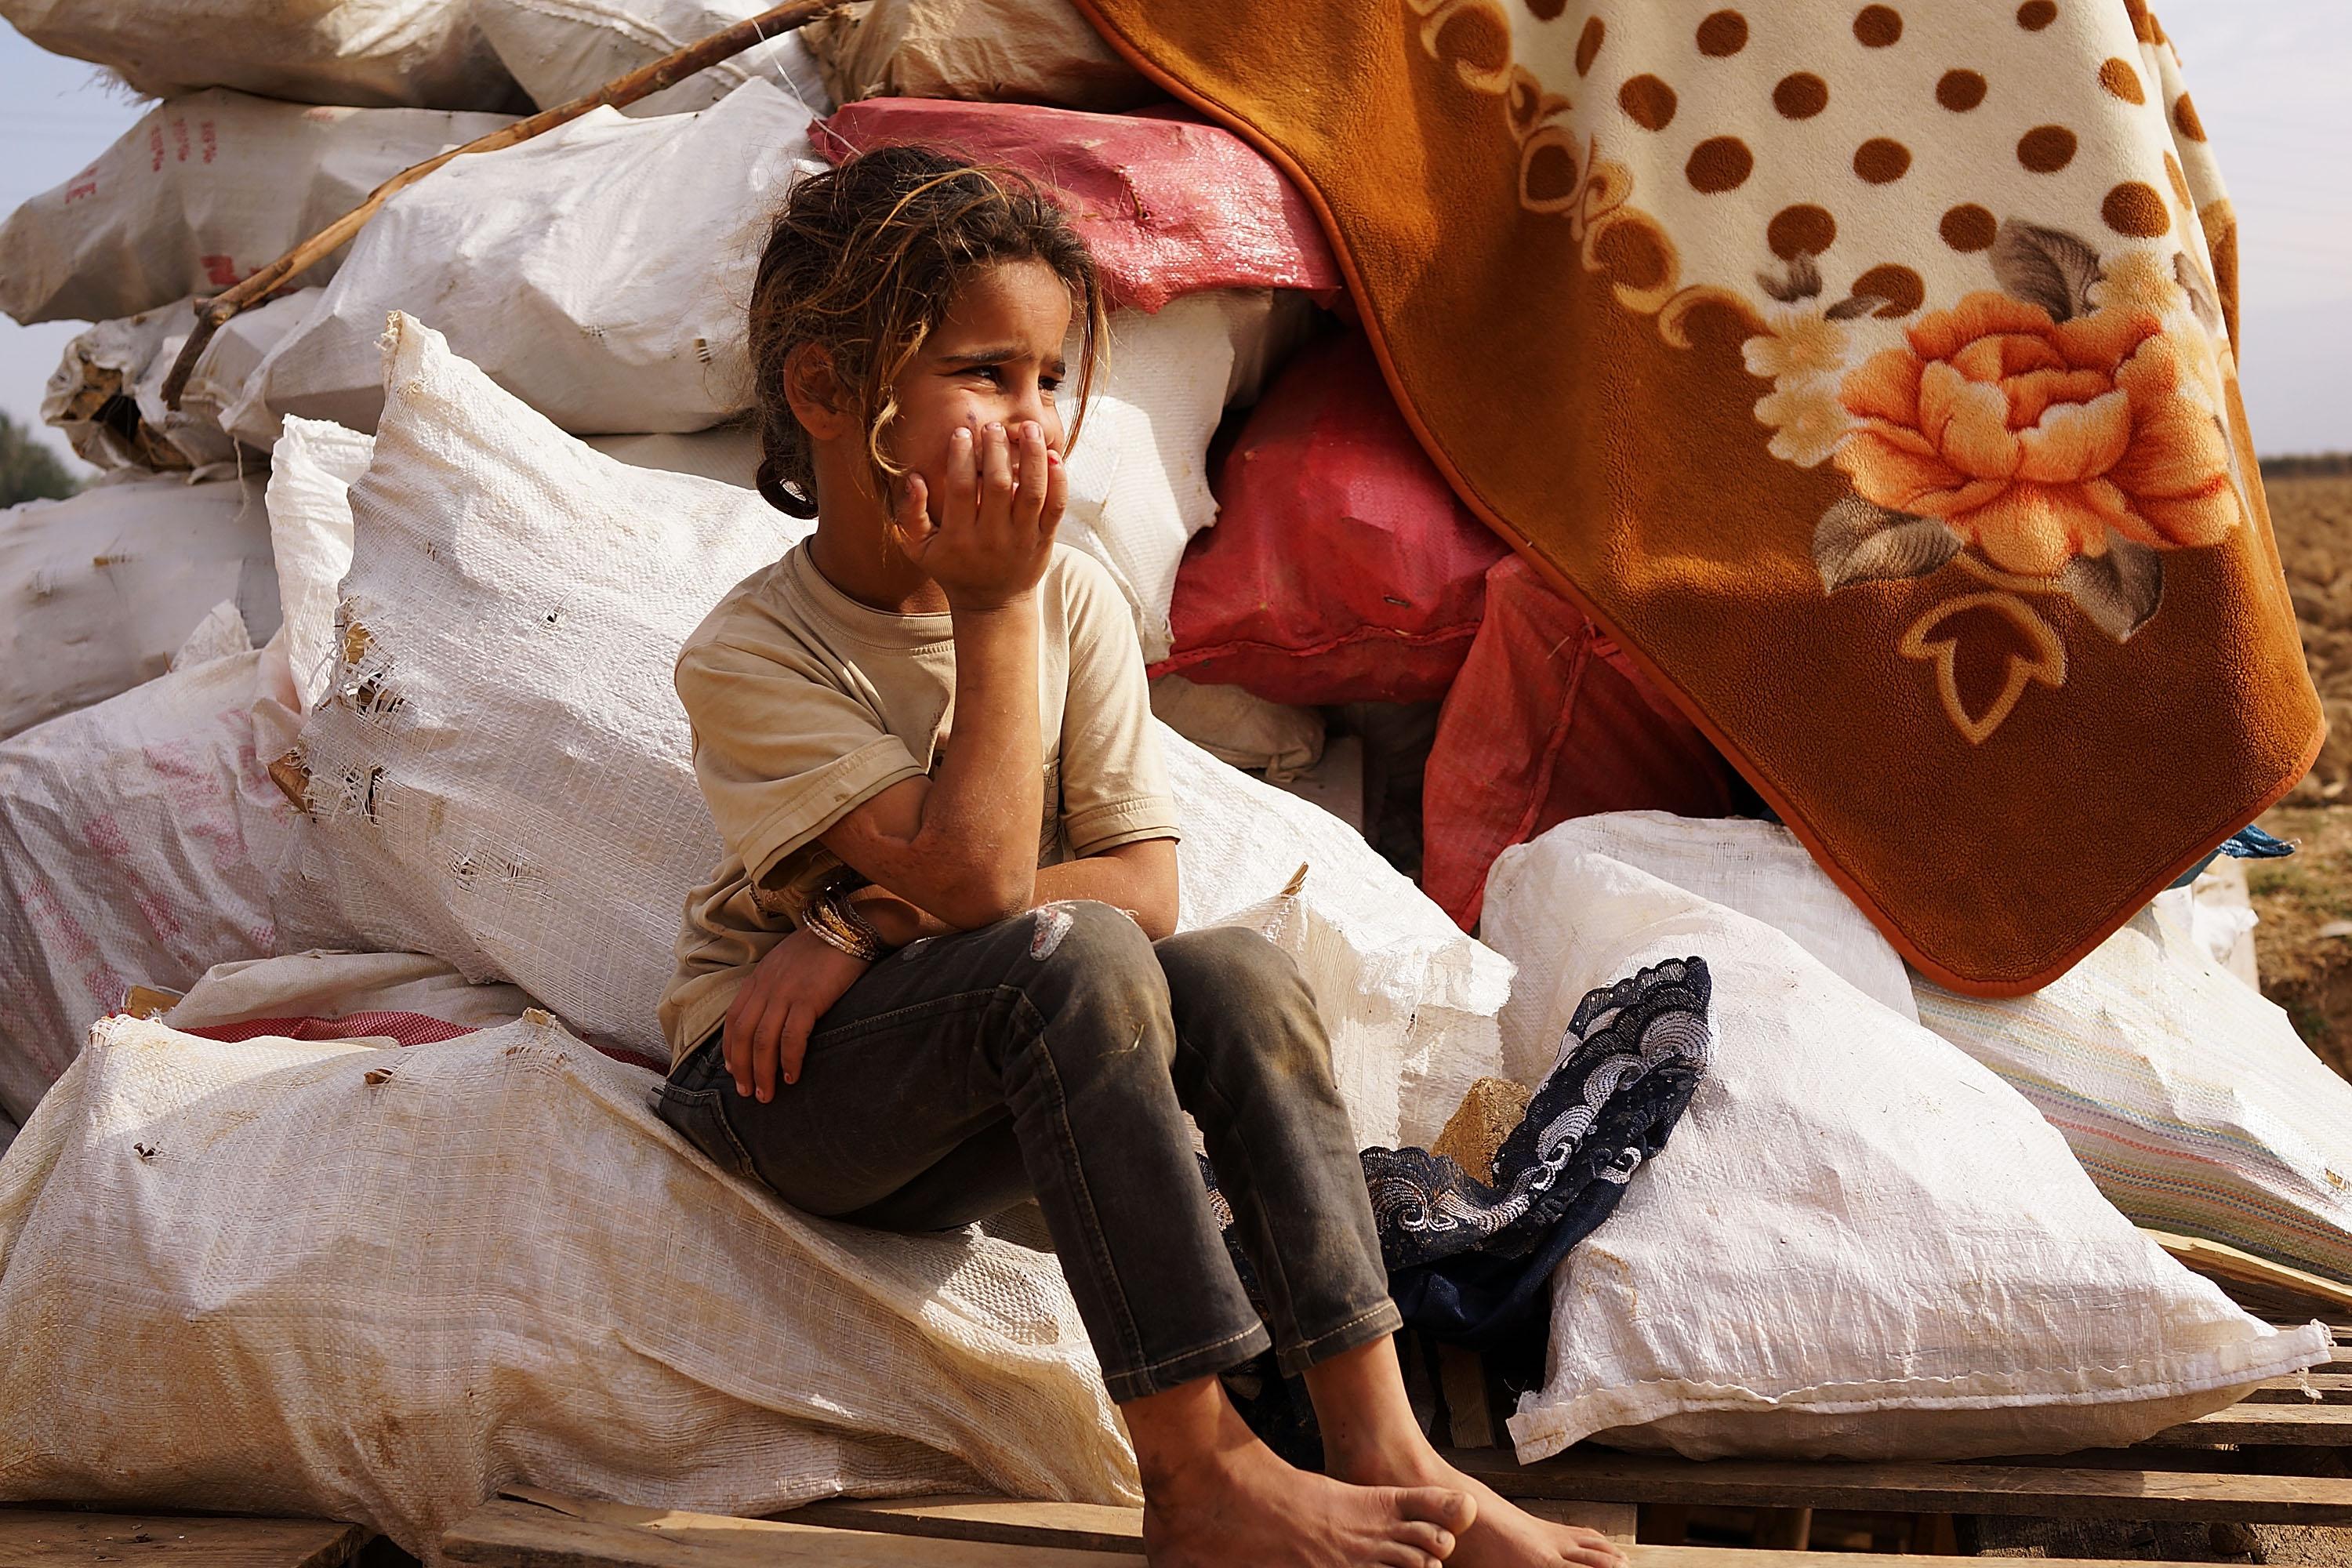 Enligt FN har konflikten i Syrien utlöst den största humanitära krisen sedan andra världskriget, med 7,6 miljoner tvångsförflyttade, 3,2 miljoner på flykt och ytterligare 12,2 miljoner människor i behov av humanitärt bistånd. (Foto: Spencer Platt /Getty Image)